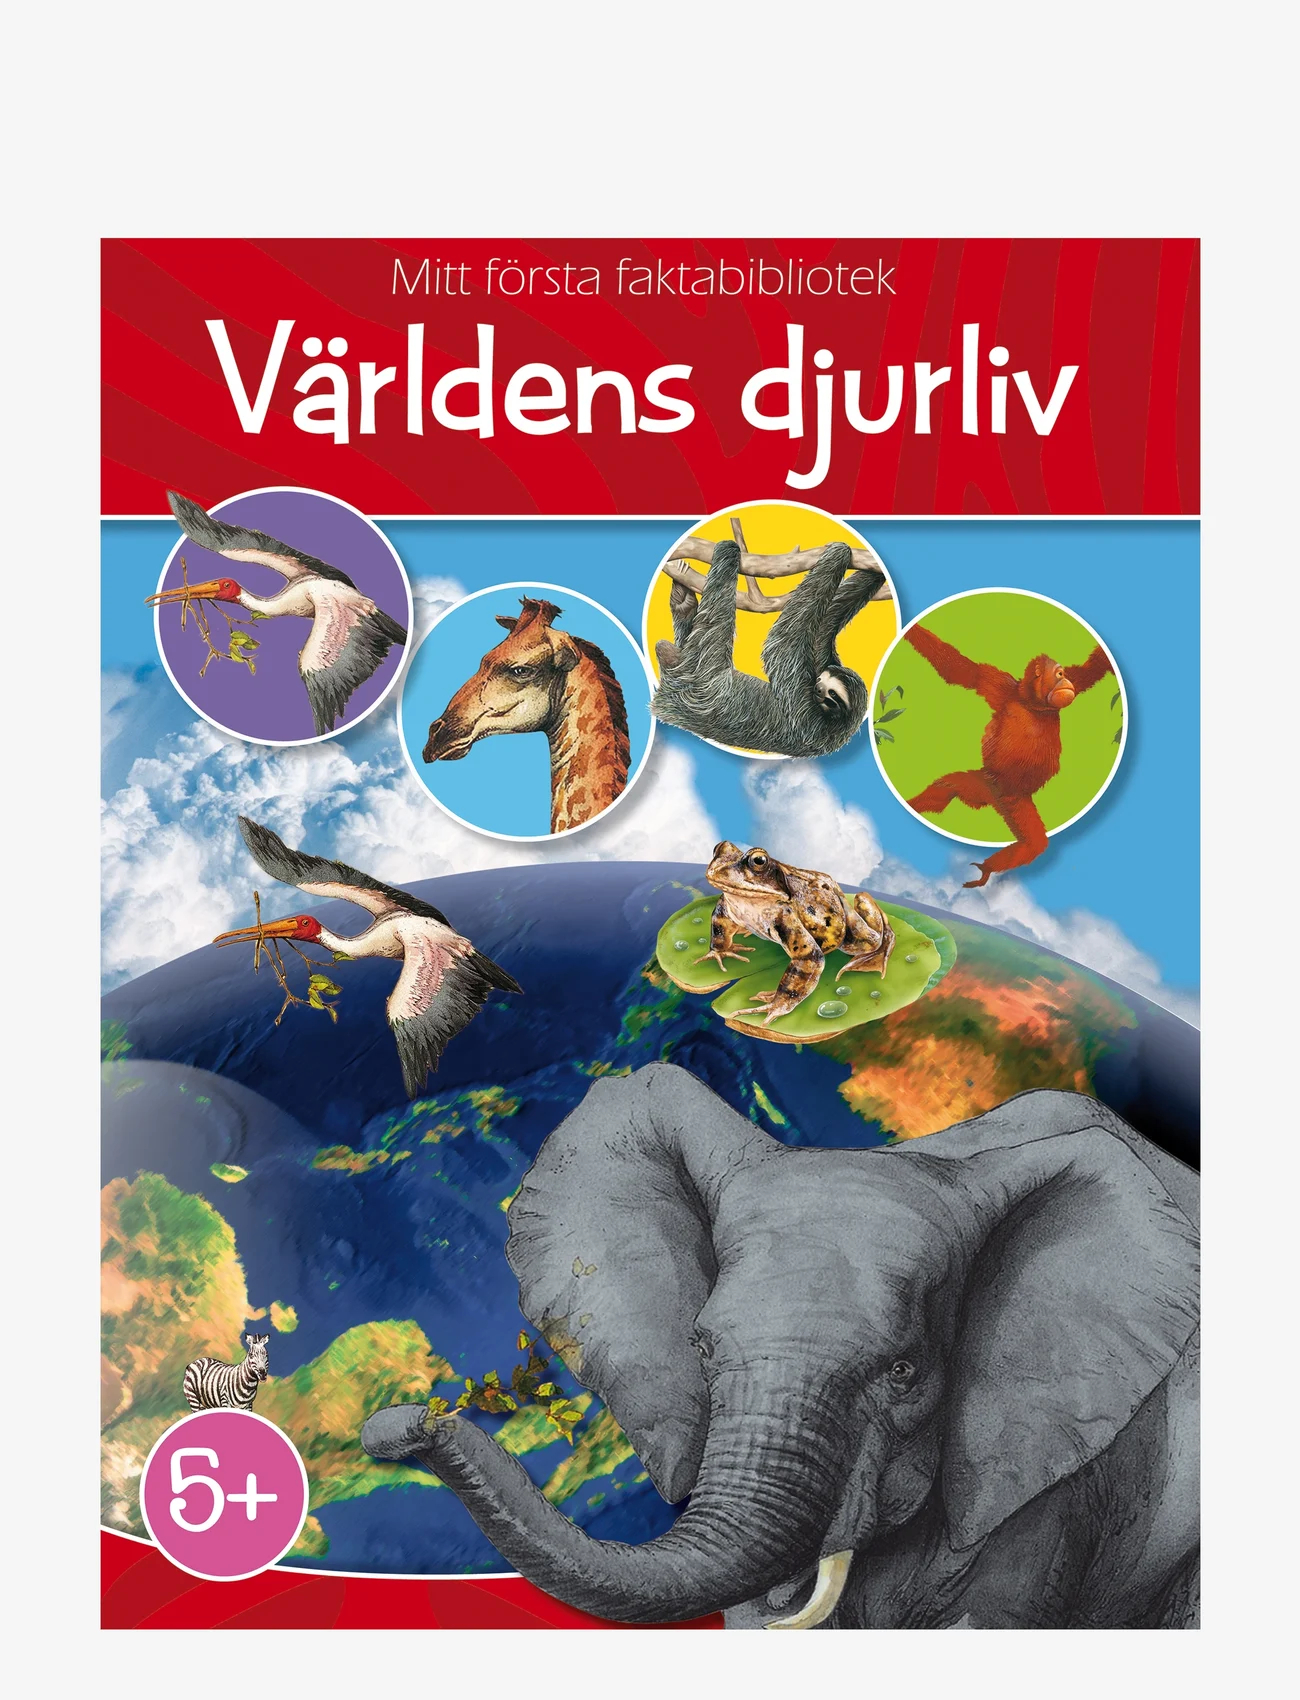 GLOBE - Världens djurliv - die niedrigsten preise - children's book - 0